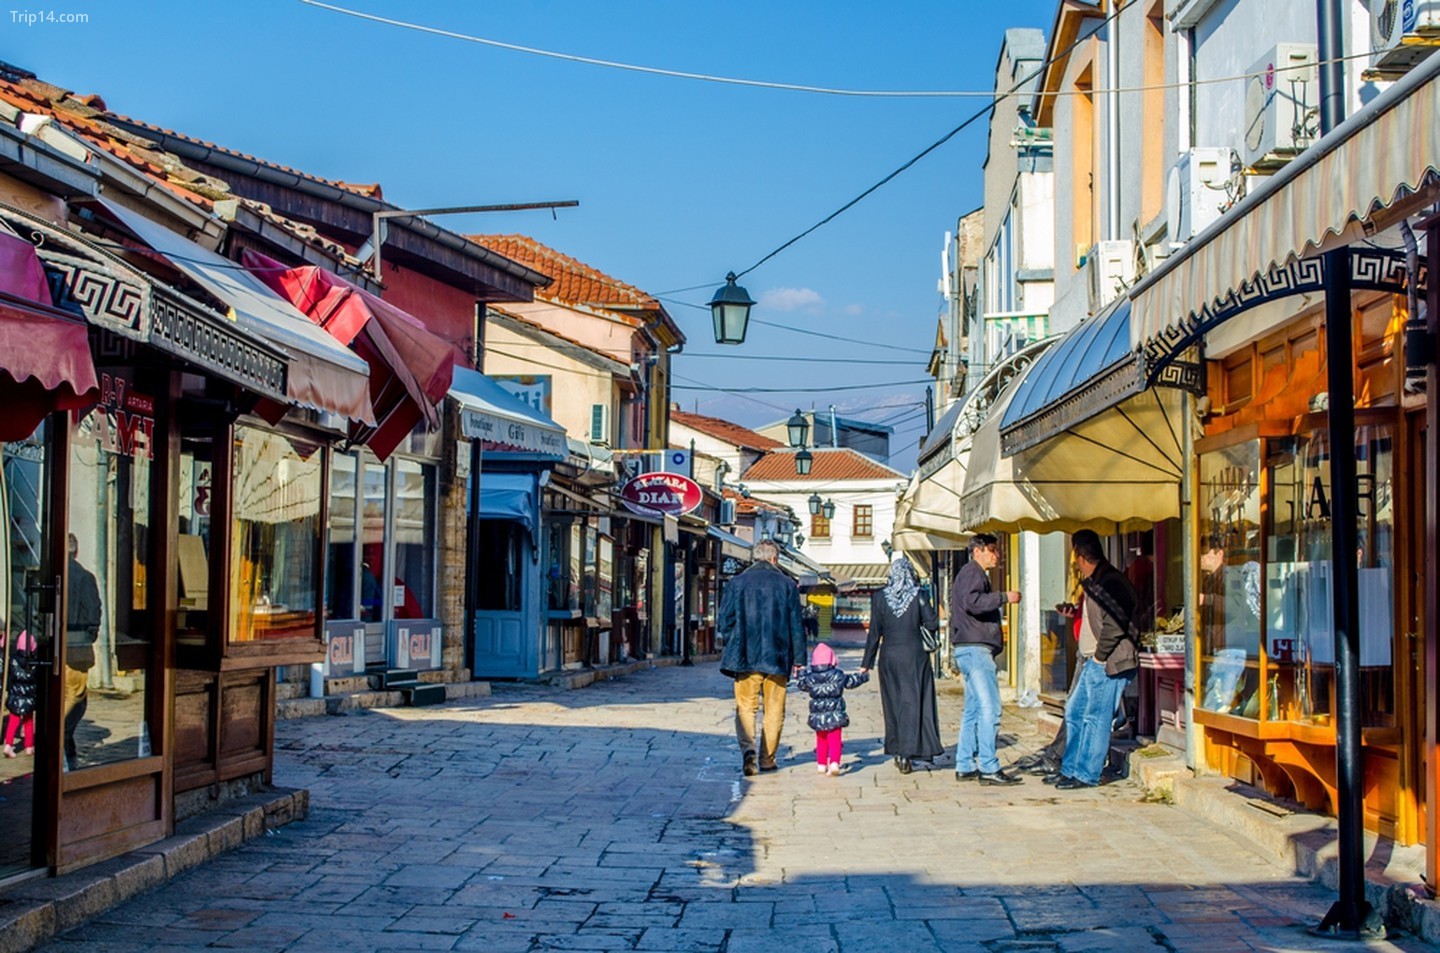 Thành phố Skopje, bao gồm nhiều con phố hẹp có đầy đủ các cửa hàng, nhà hàng và khu chợ